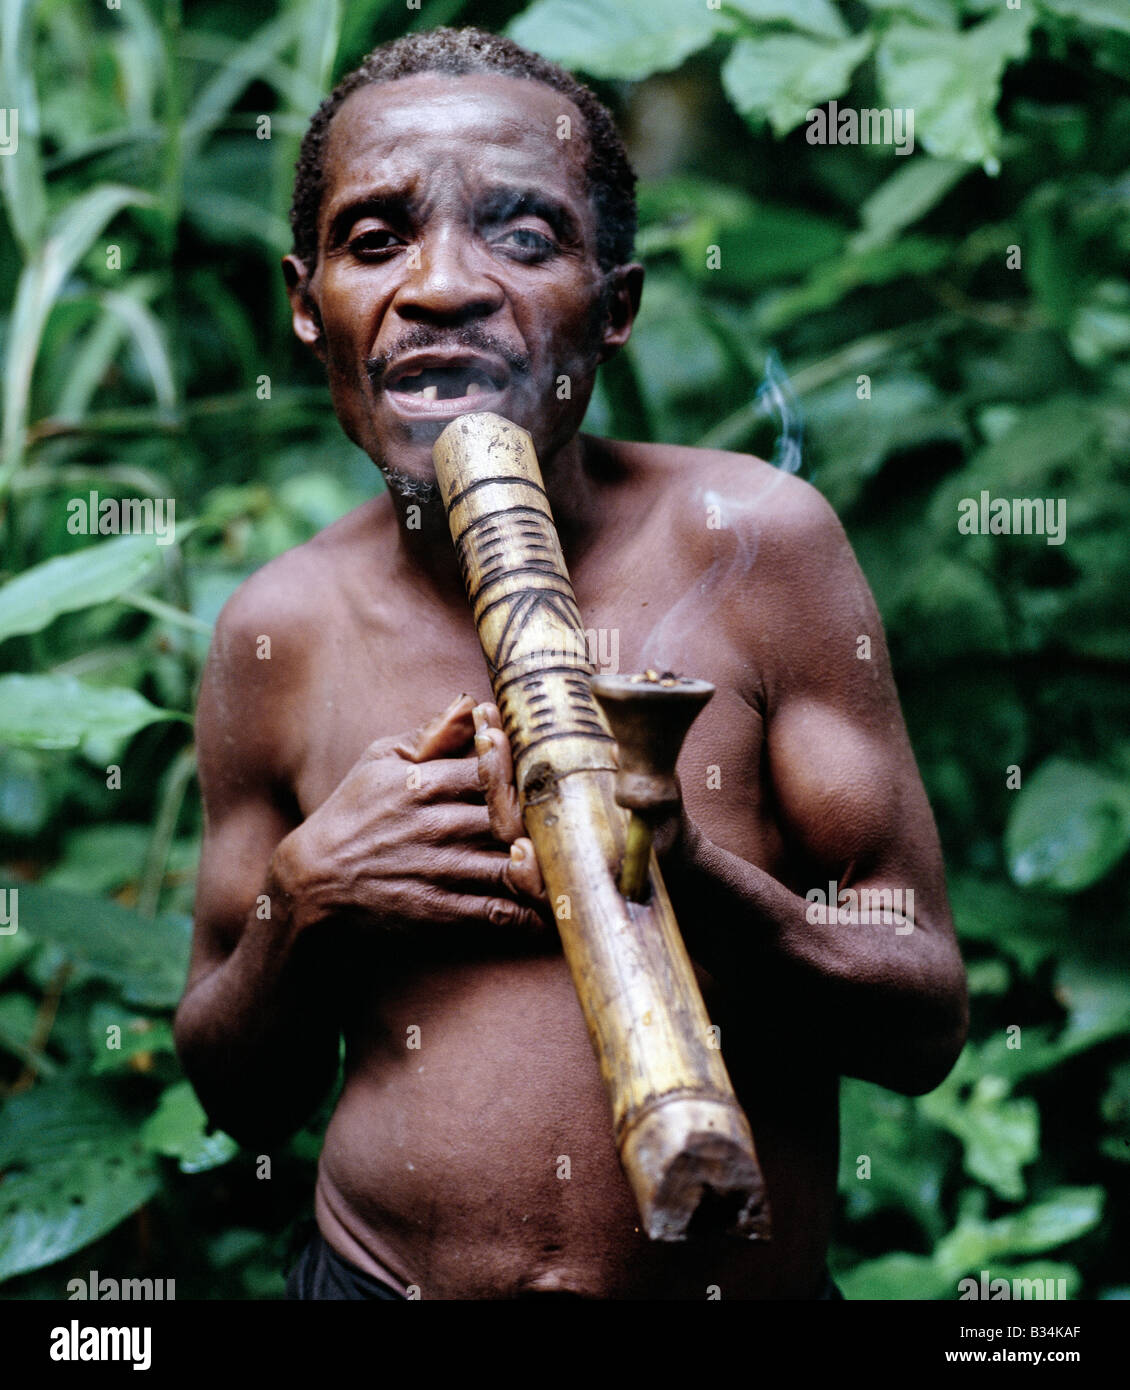 L'Ouganda, forêt de Semliki, Bundibugiyo. Bandes de pygmées Batwa chasser et pêcher dans la forêt de Semliki de l'ouest de l'Ouganda, une extension de la grande forêt de l'Ituri du Congo RDC. Rarement plus de cinq pieds de haut, les Batwa sont de descendance mixte, étant en moyenne de six pouces plus grands que leurs cousins pygmées Bambuti qui vivent à l'intérieur de la forêt du Congo.après de fortes pluies, cet homme fume du cannabis à l'aide d'un tuyau en bambou traditionnel. Banque D'Images